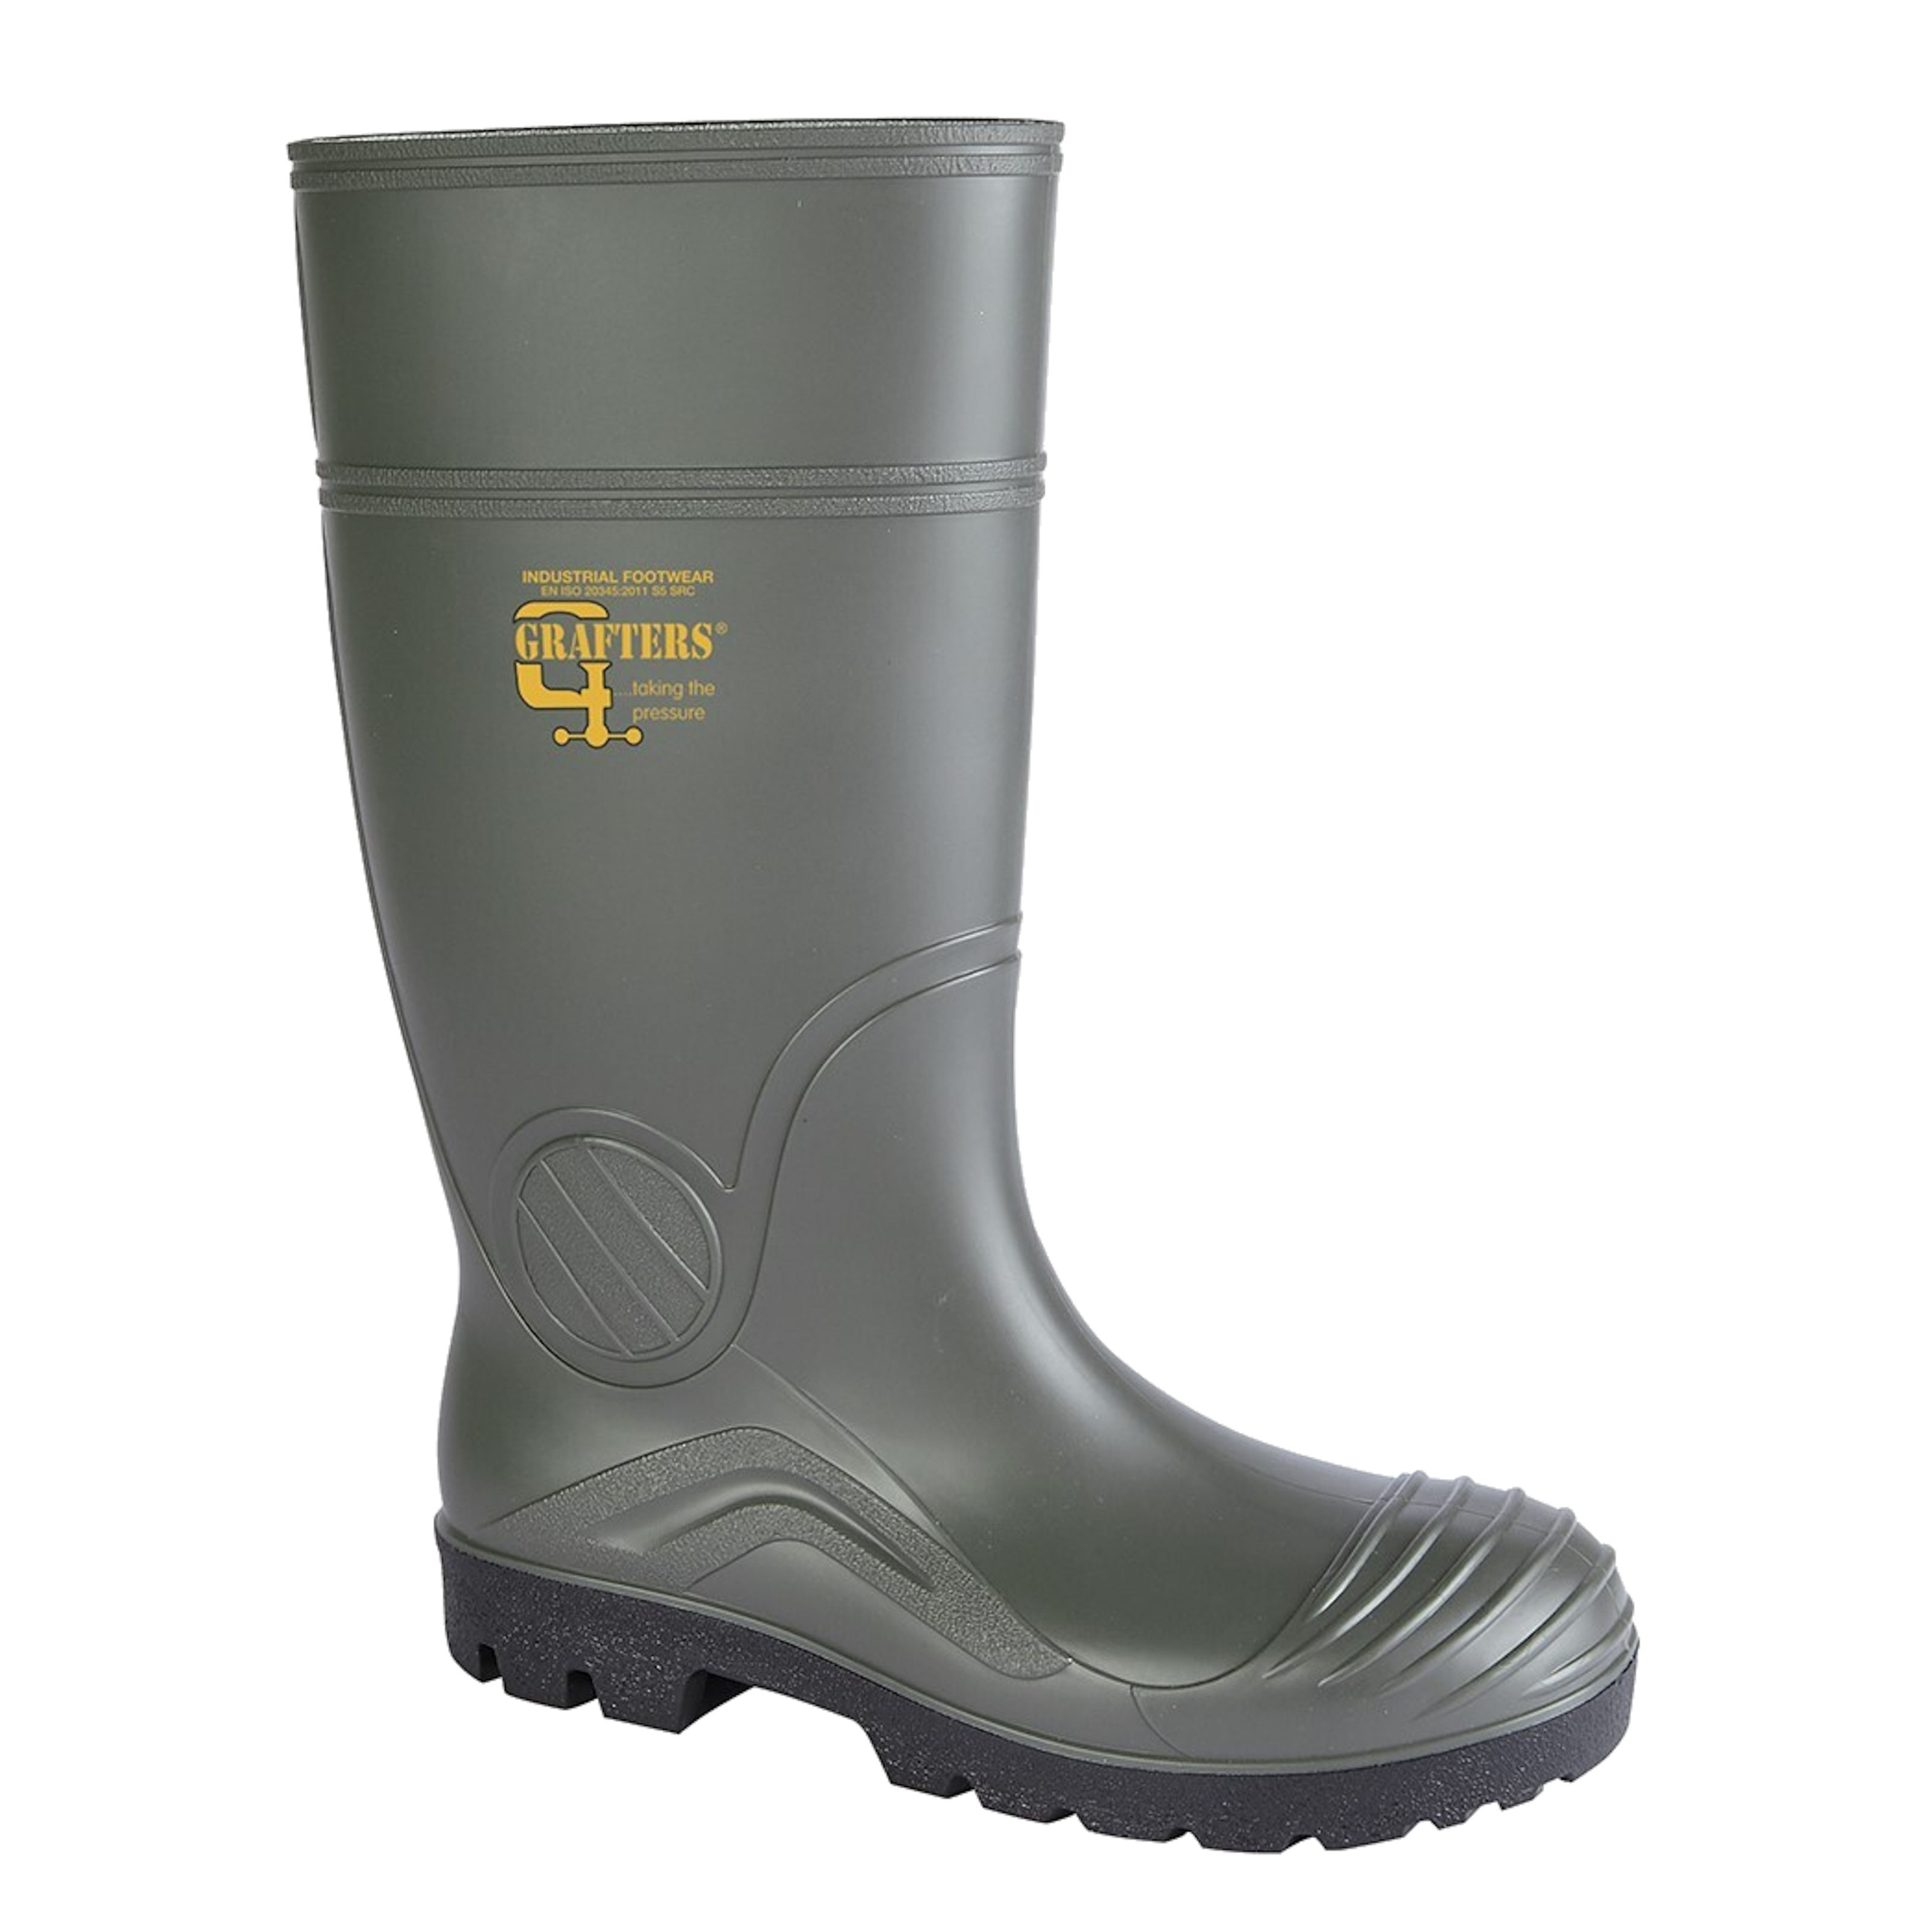 Wellington Boots Steel Toe Cap Wellies Safety Work Waterproof Garden Black Grey 